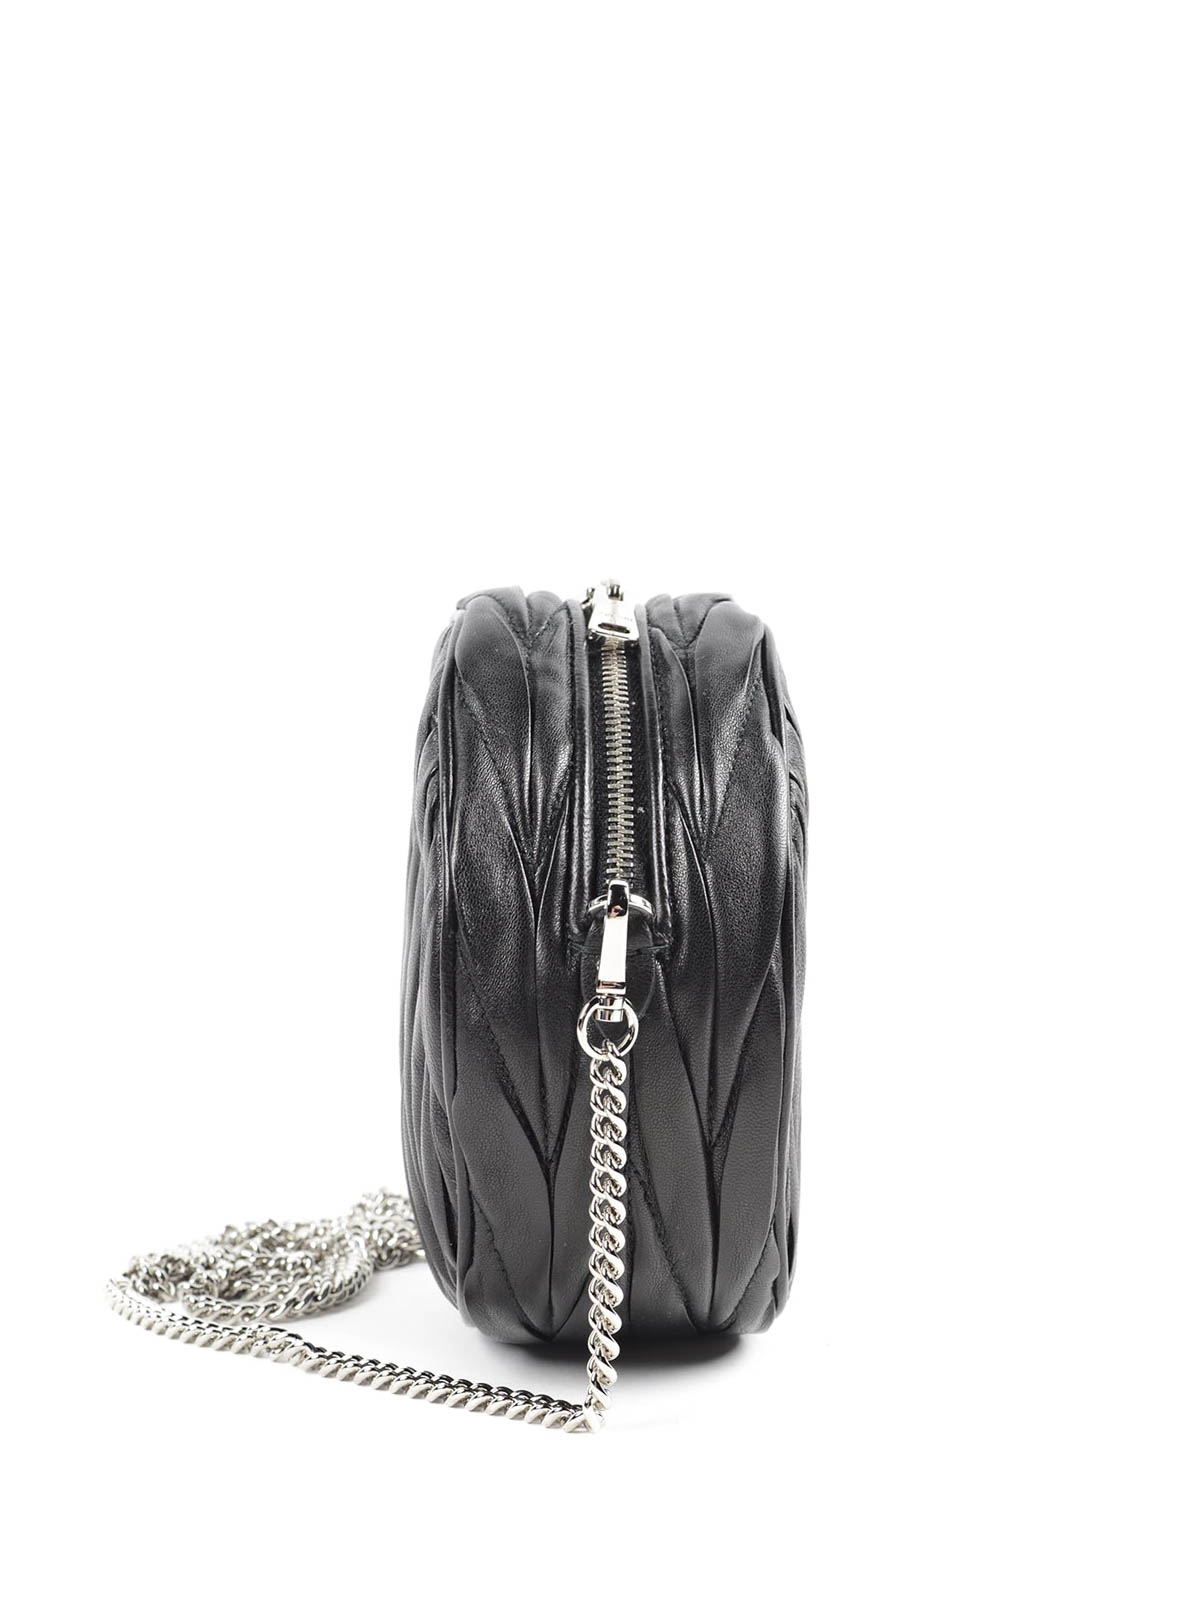 MIU MIU Black Leather Diamante Tote Shoulder Sling Bag